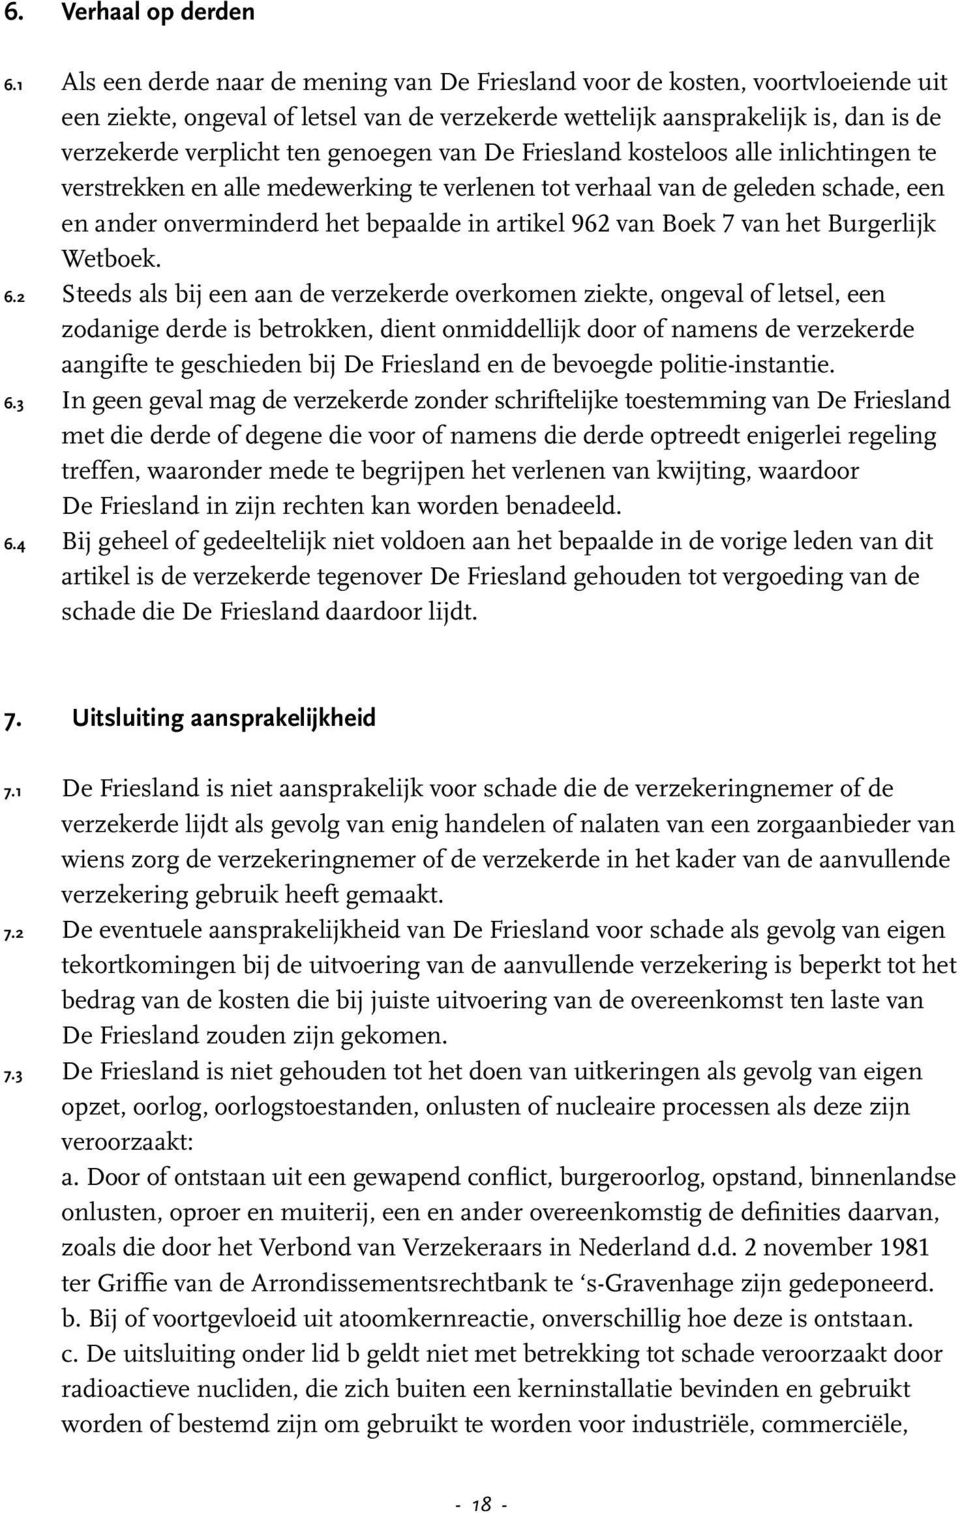 genoegen van De Friesland kosteloos alle inlichtingen te verstrekken en alle medewerking te verlenen tot verhaal van de geleden schade, een en ander onverminderd het bepaalde in artikel 962 van Boek